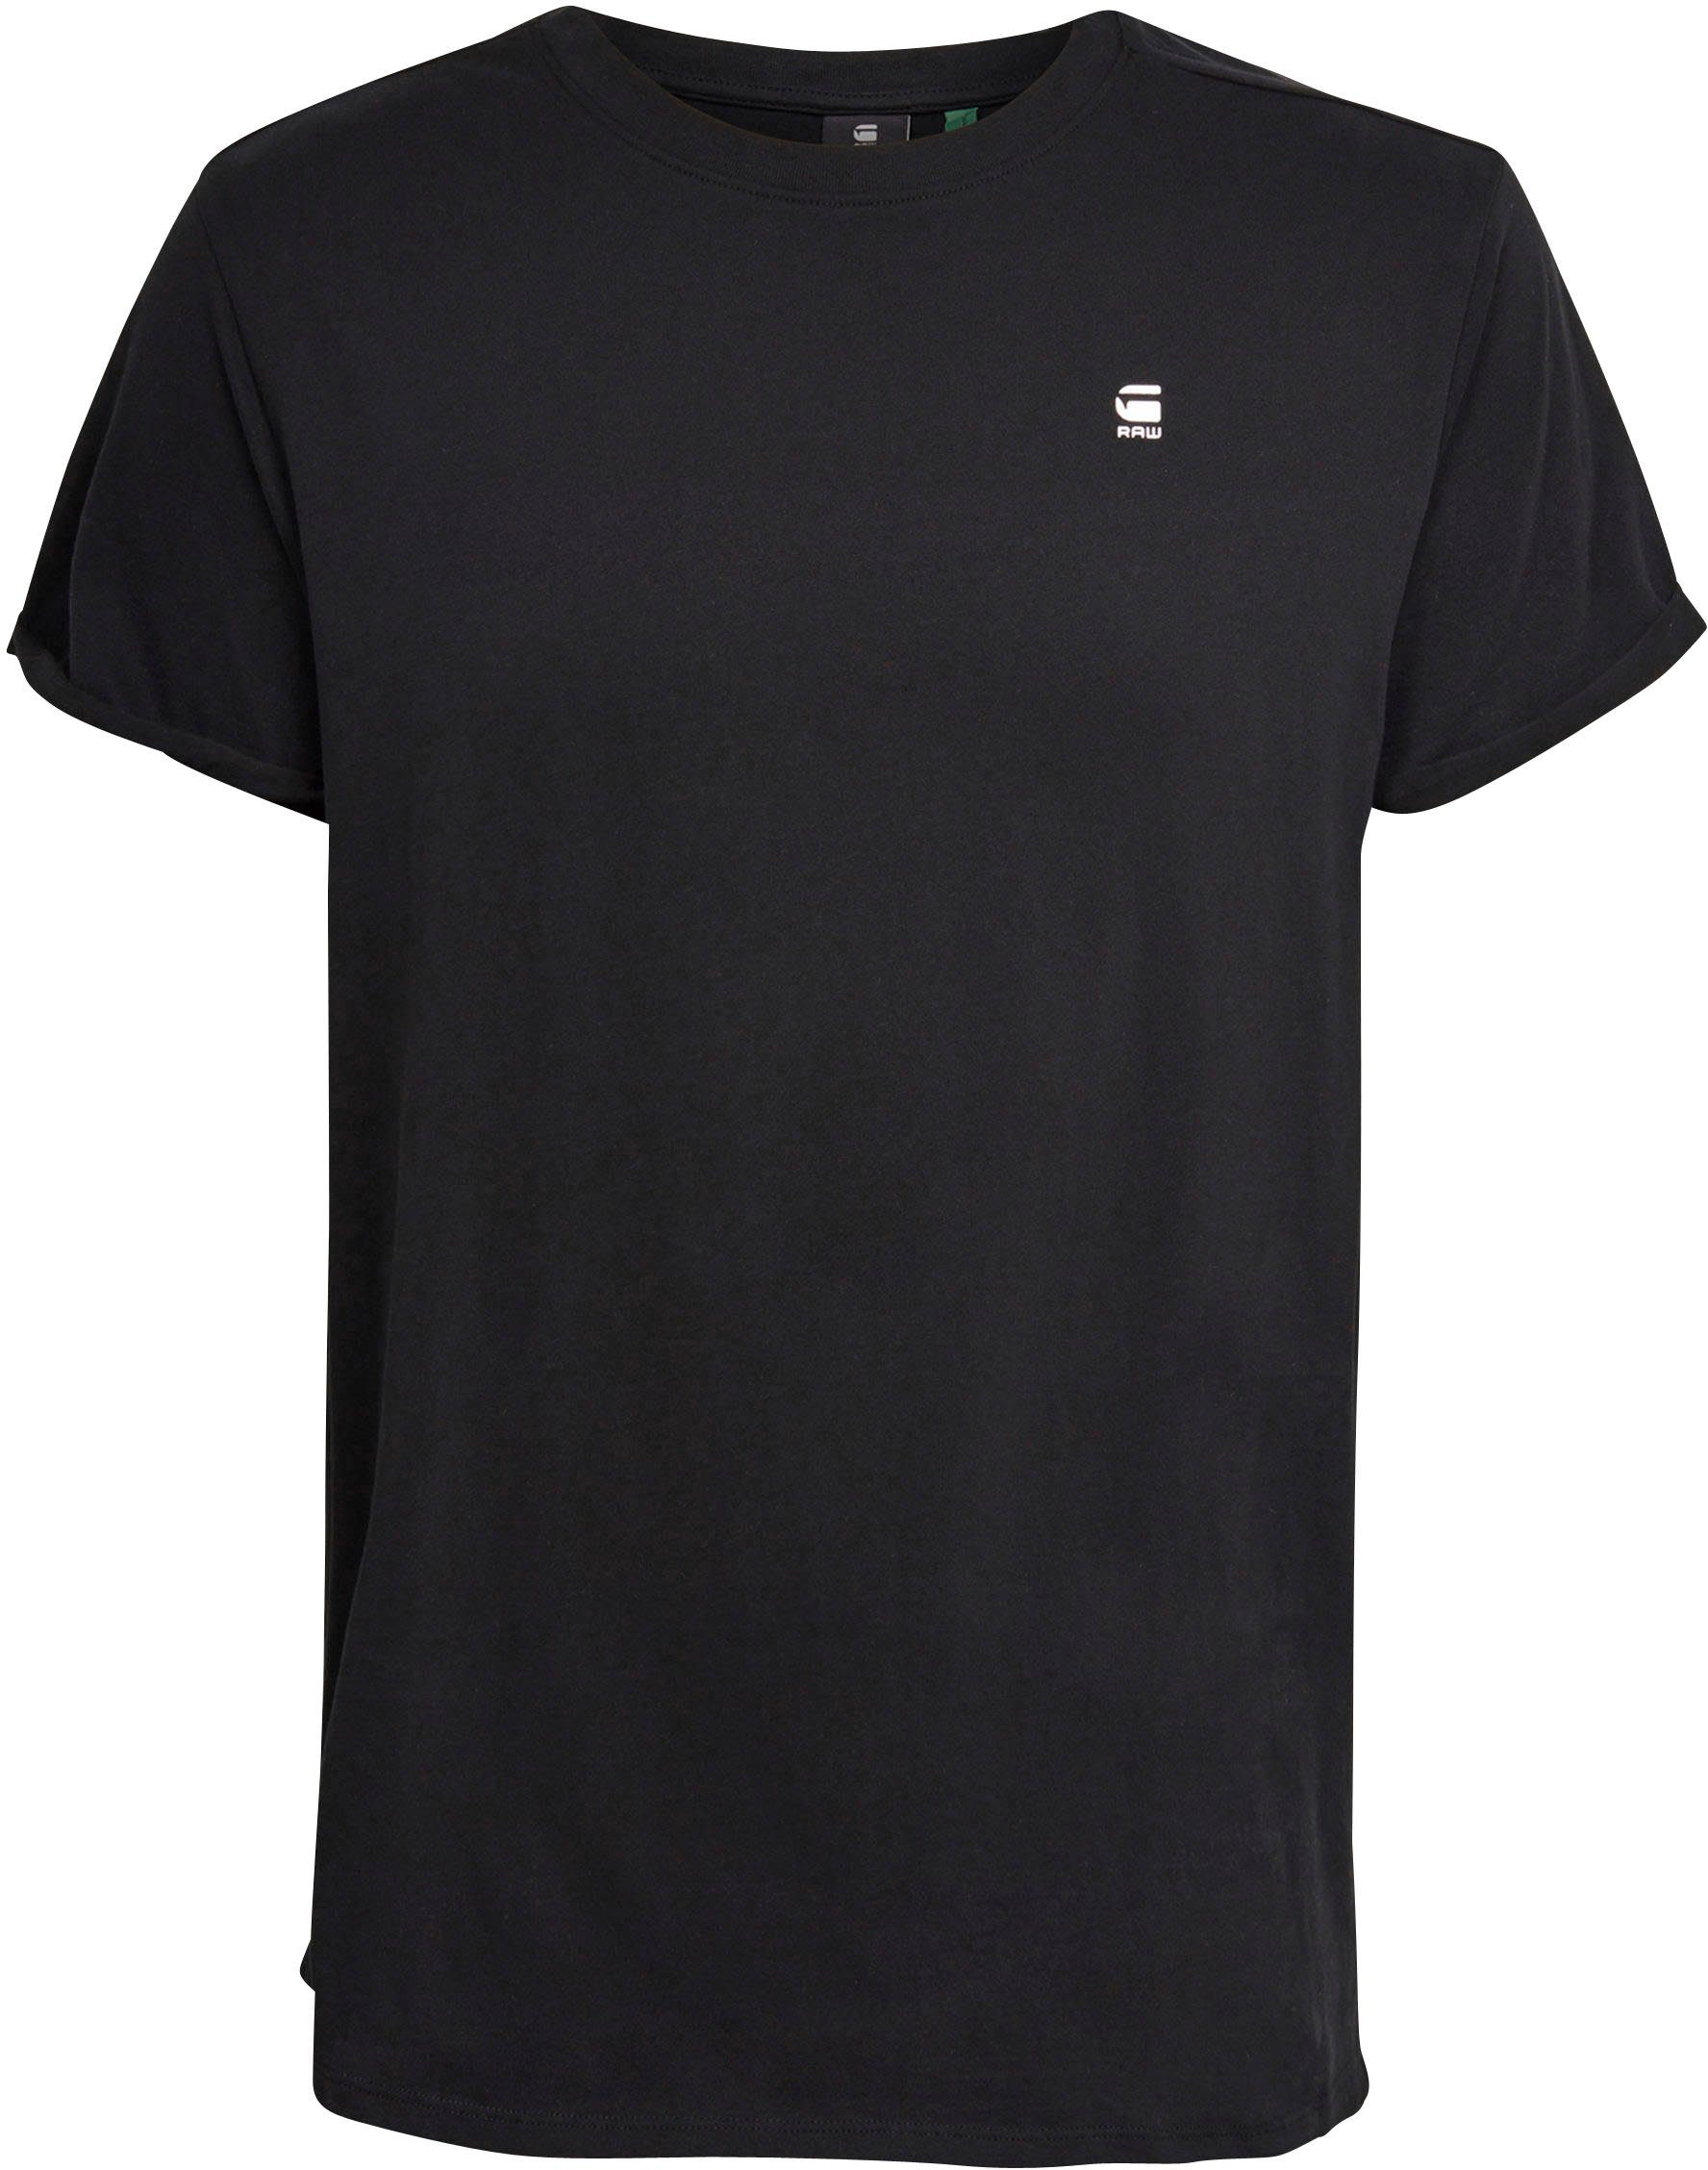 Lash kleinem Stitching T-Shirt black G-Star Logo mit RAW